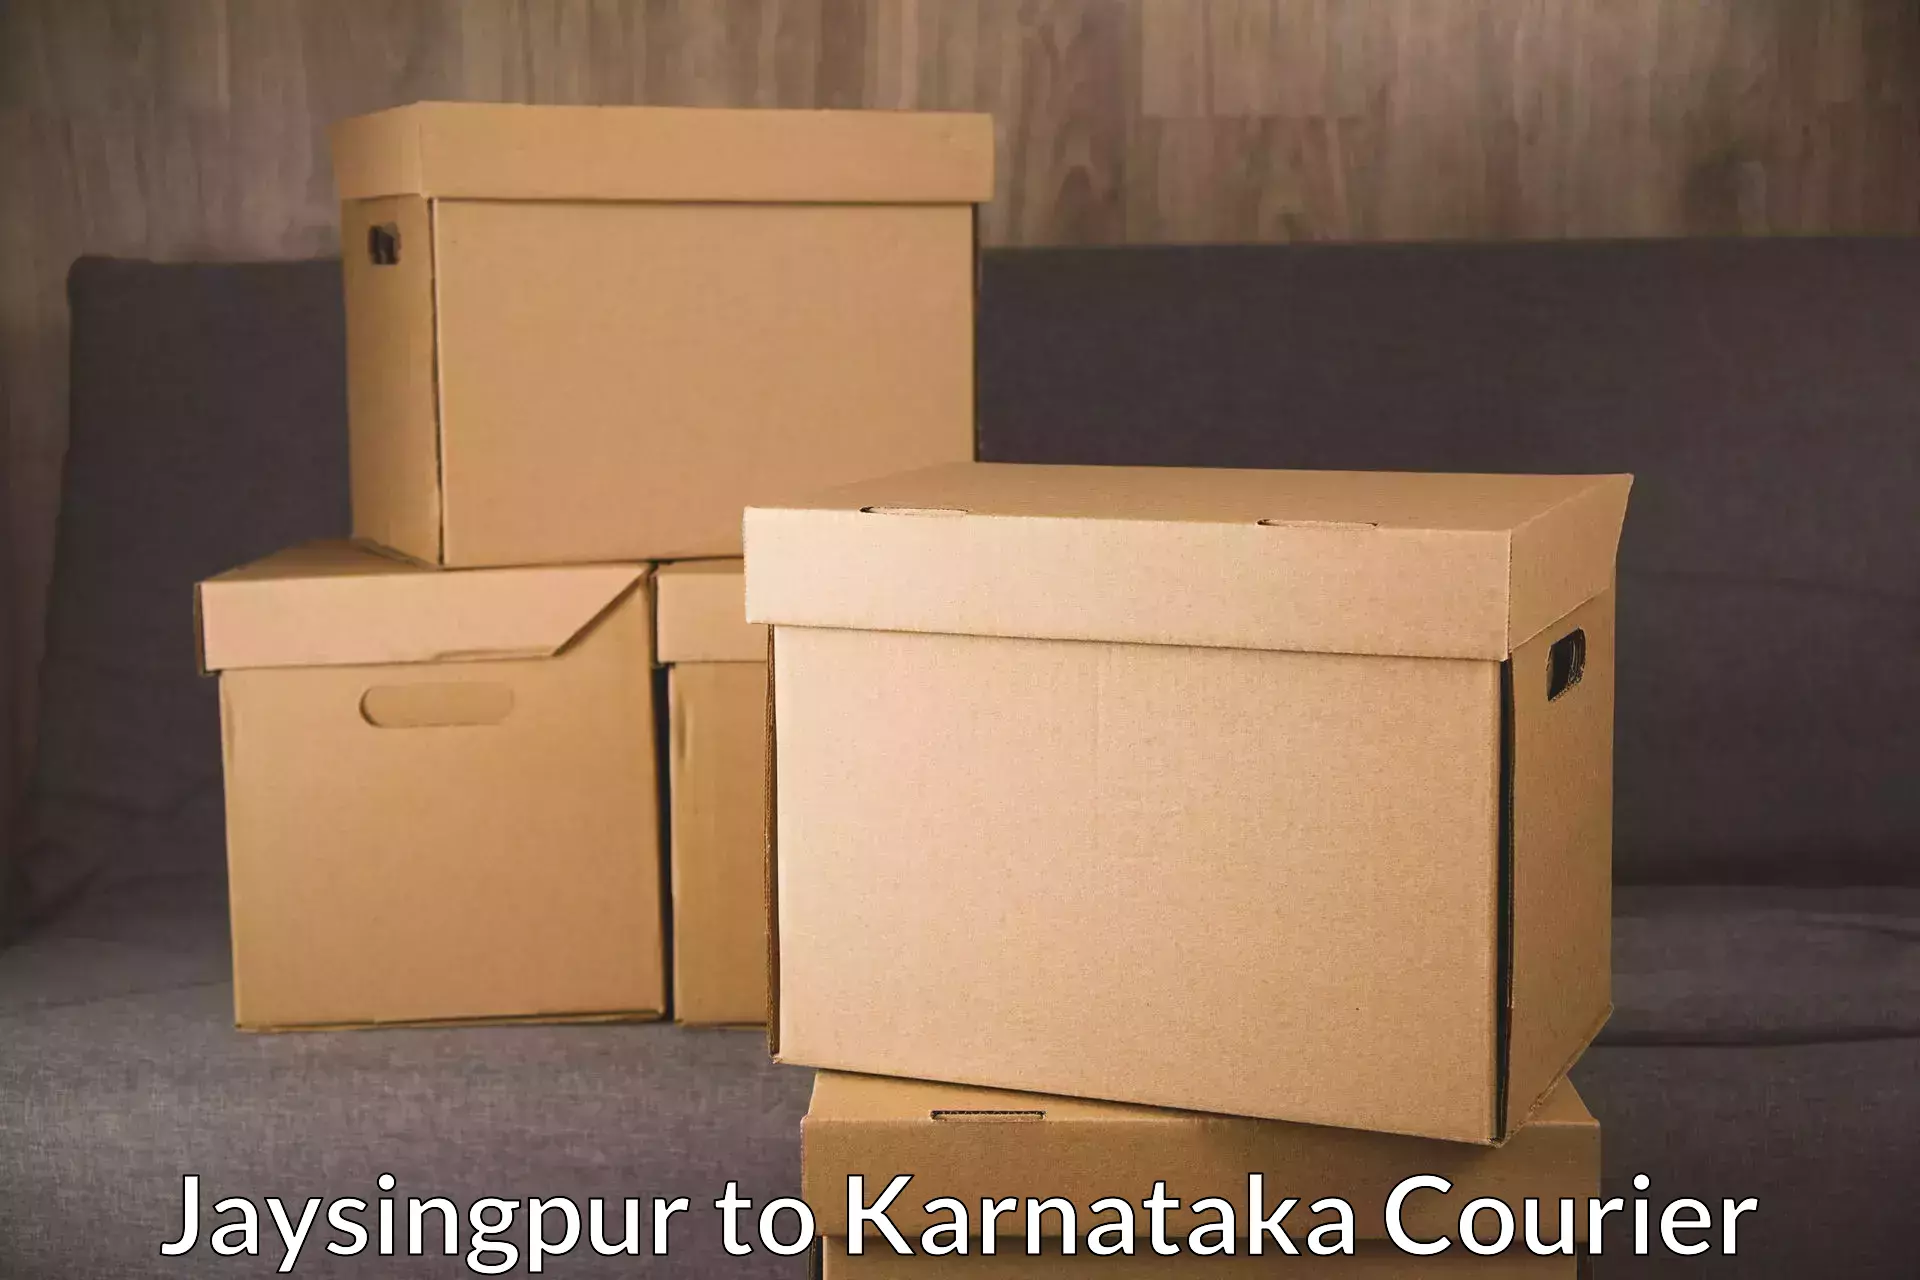 High-capacity parcel service Jaysingpur to Karnataka